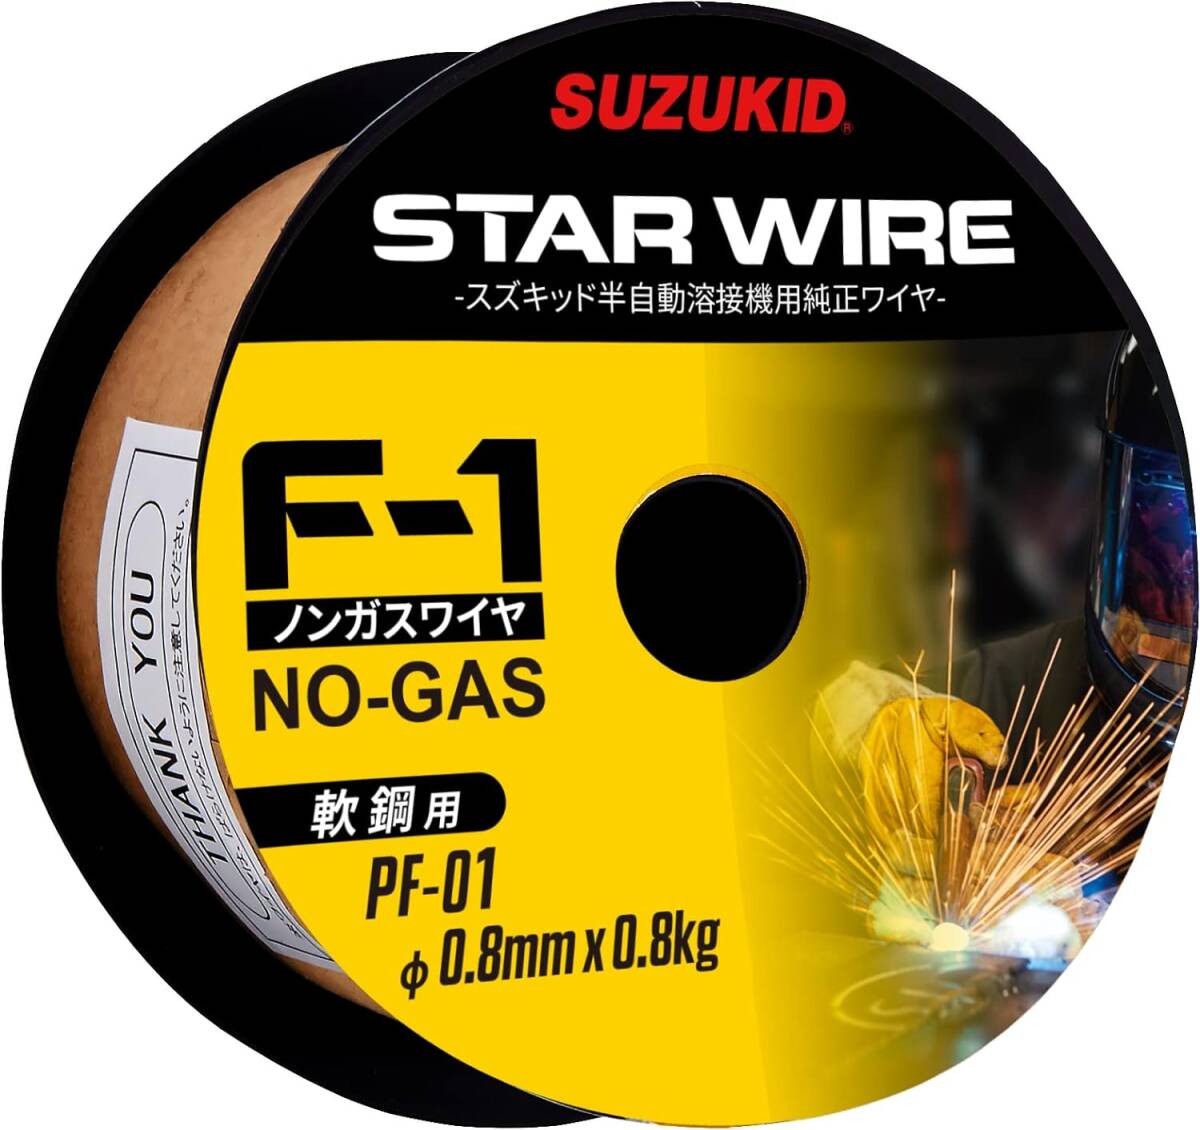 SUZUKID Buddy140 SBD-140CF welding wire PF-01 set 